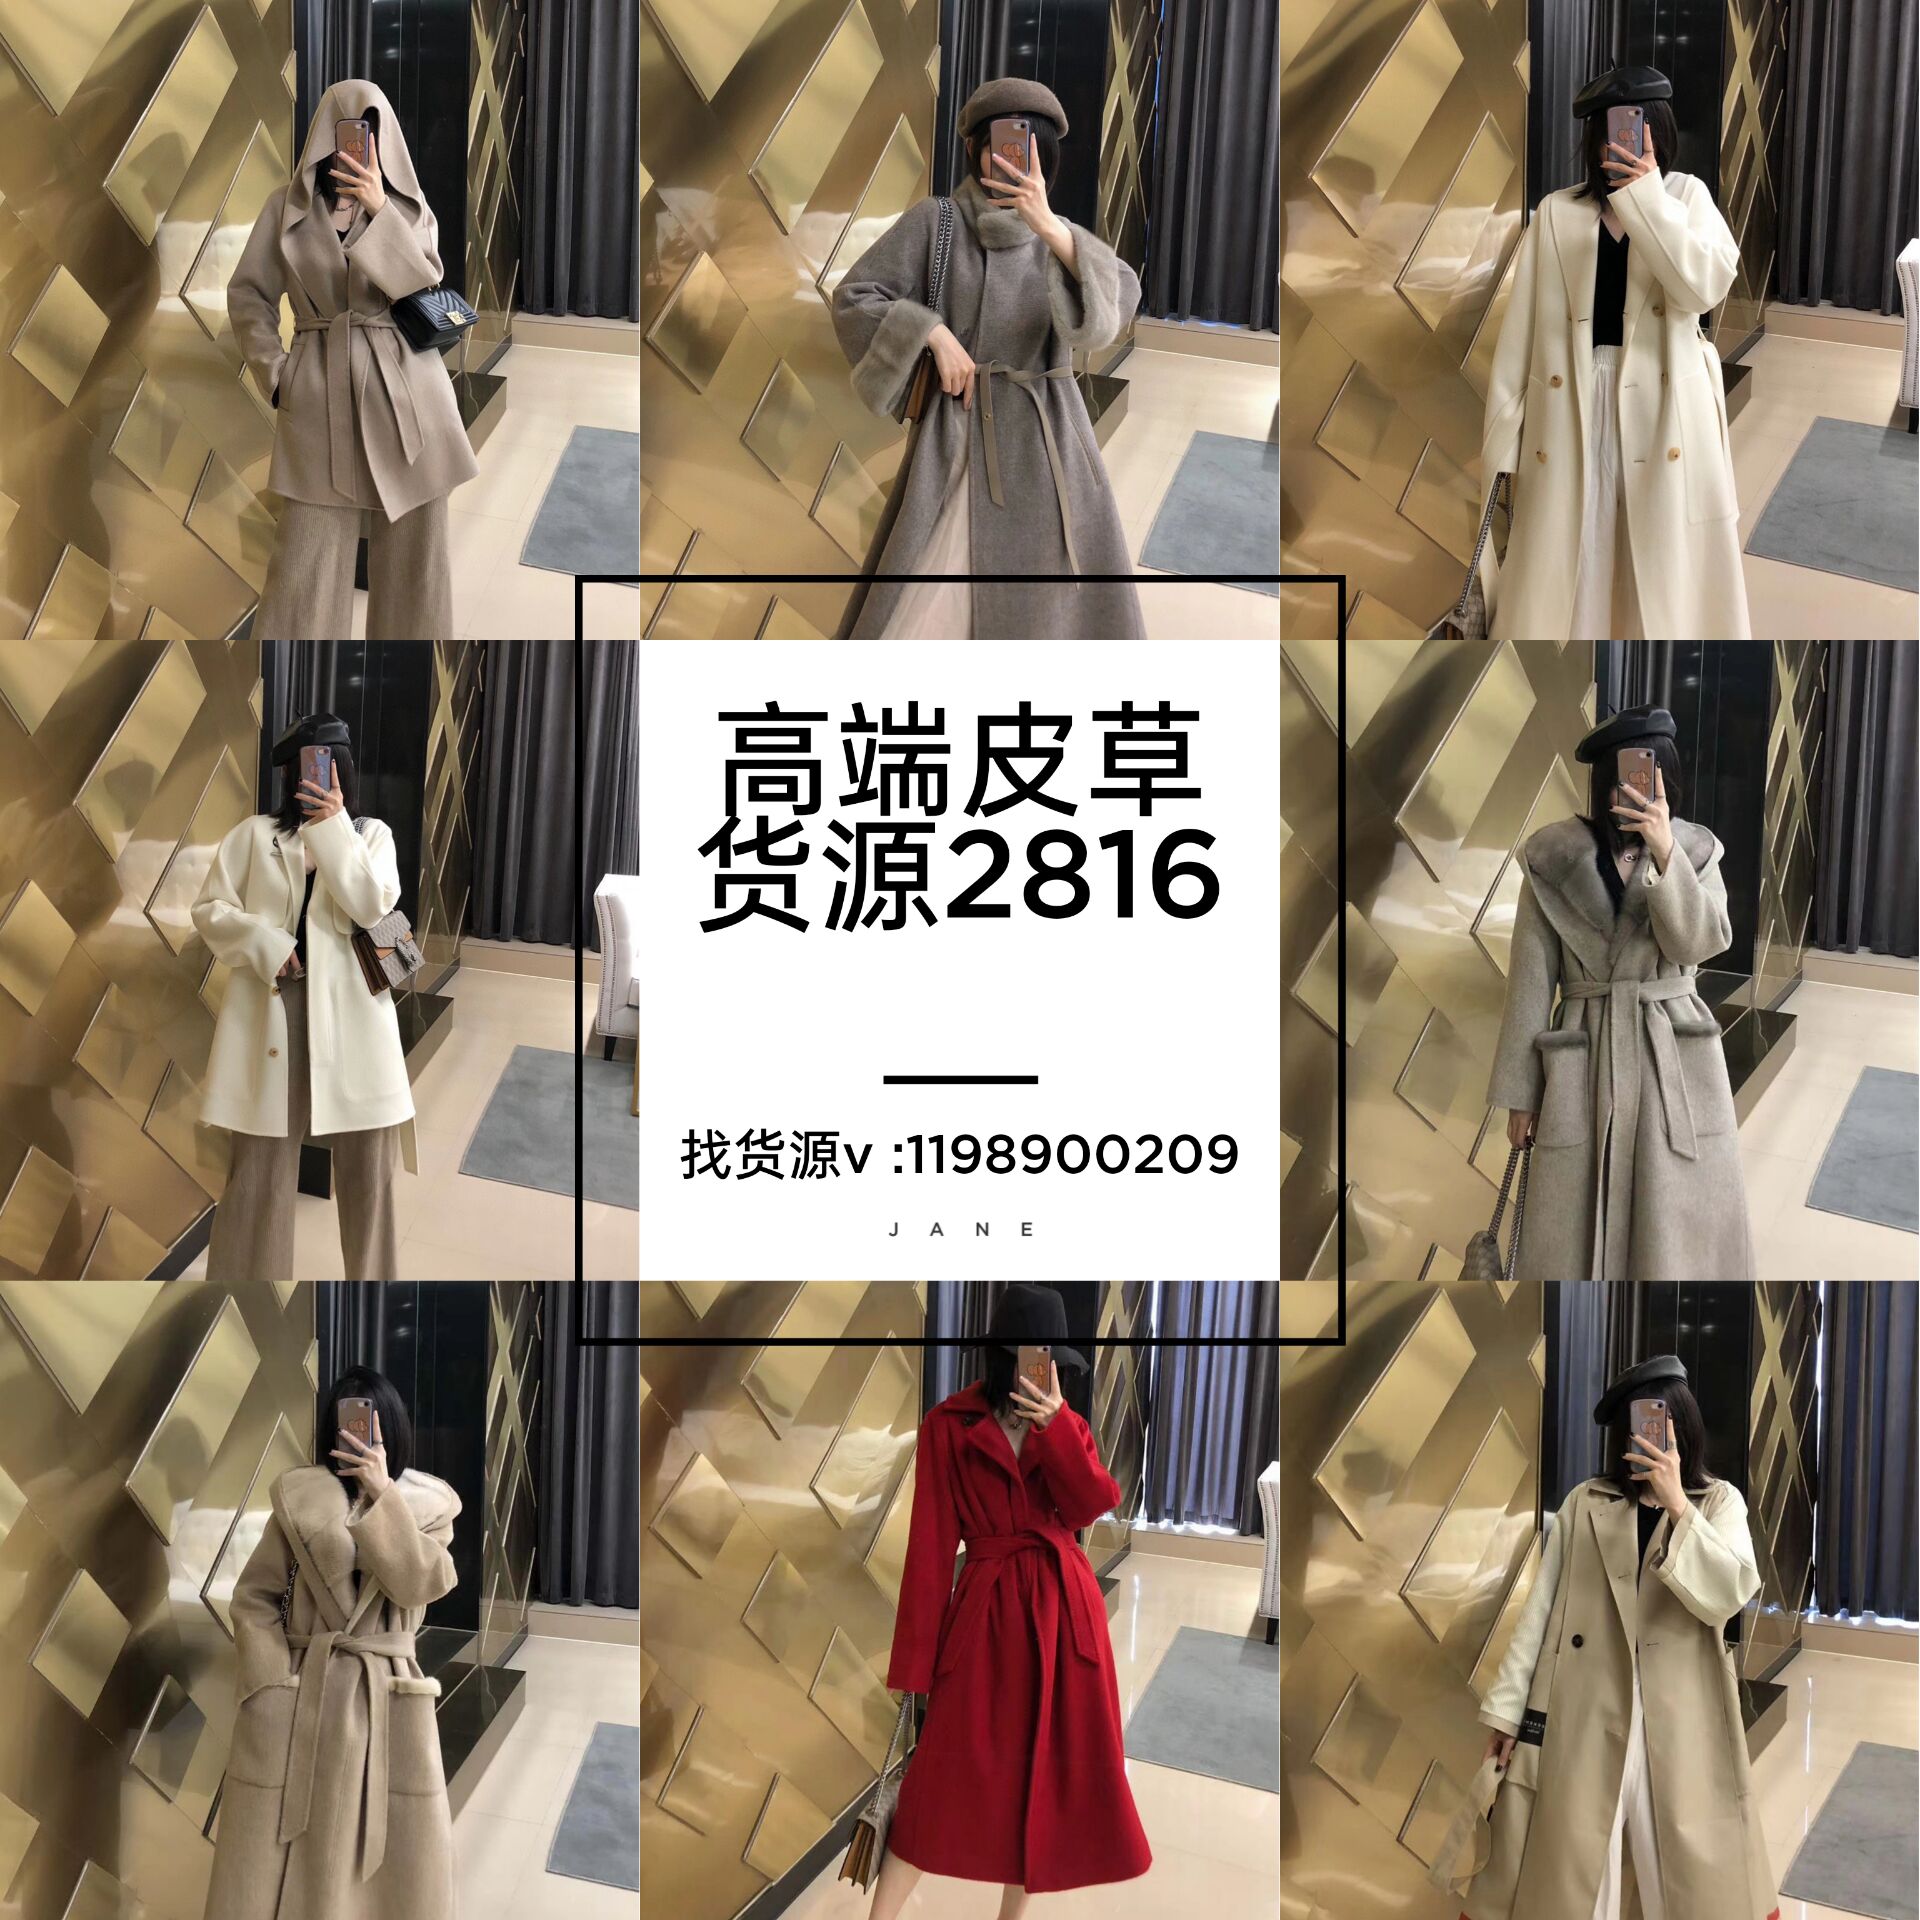 大牌工厂厂家羊绒大衣maxmaara101801 原版开模打造